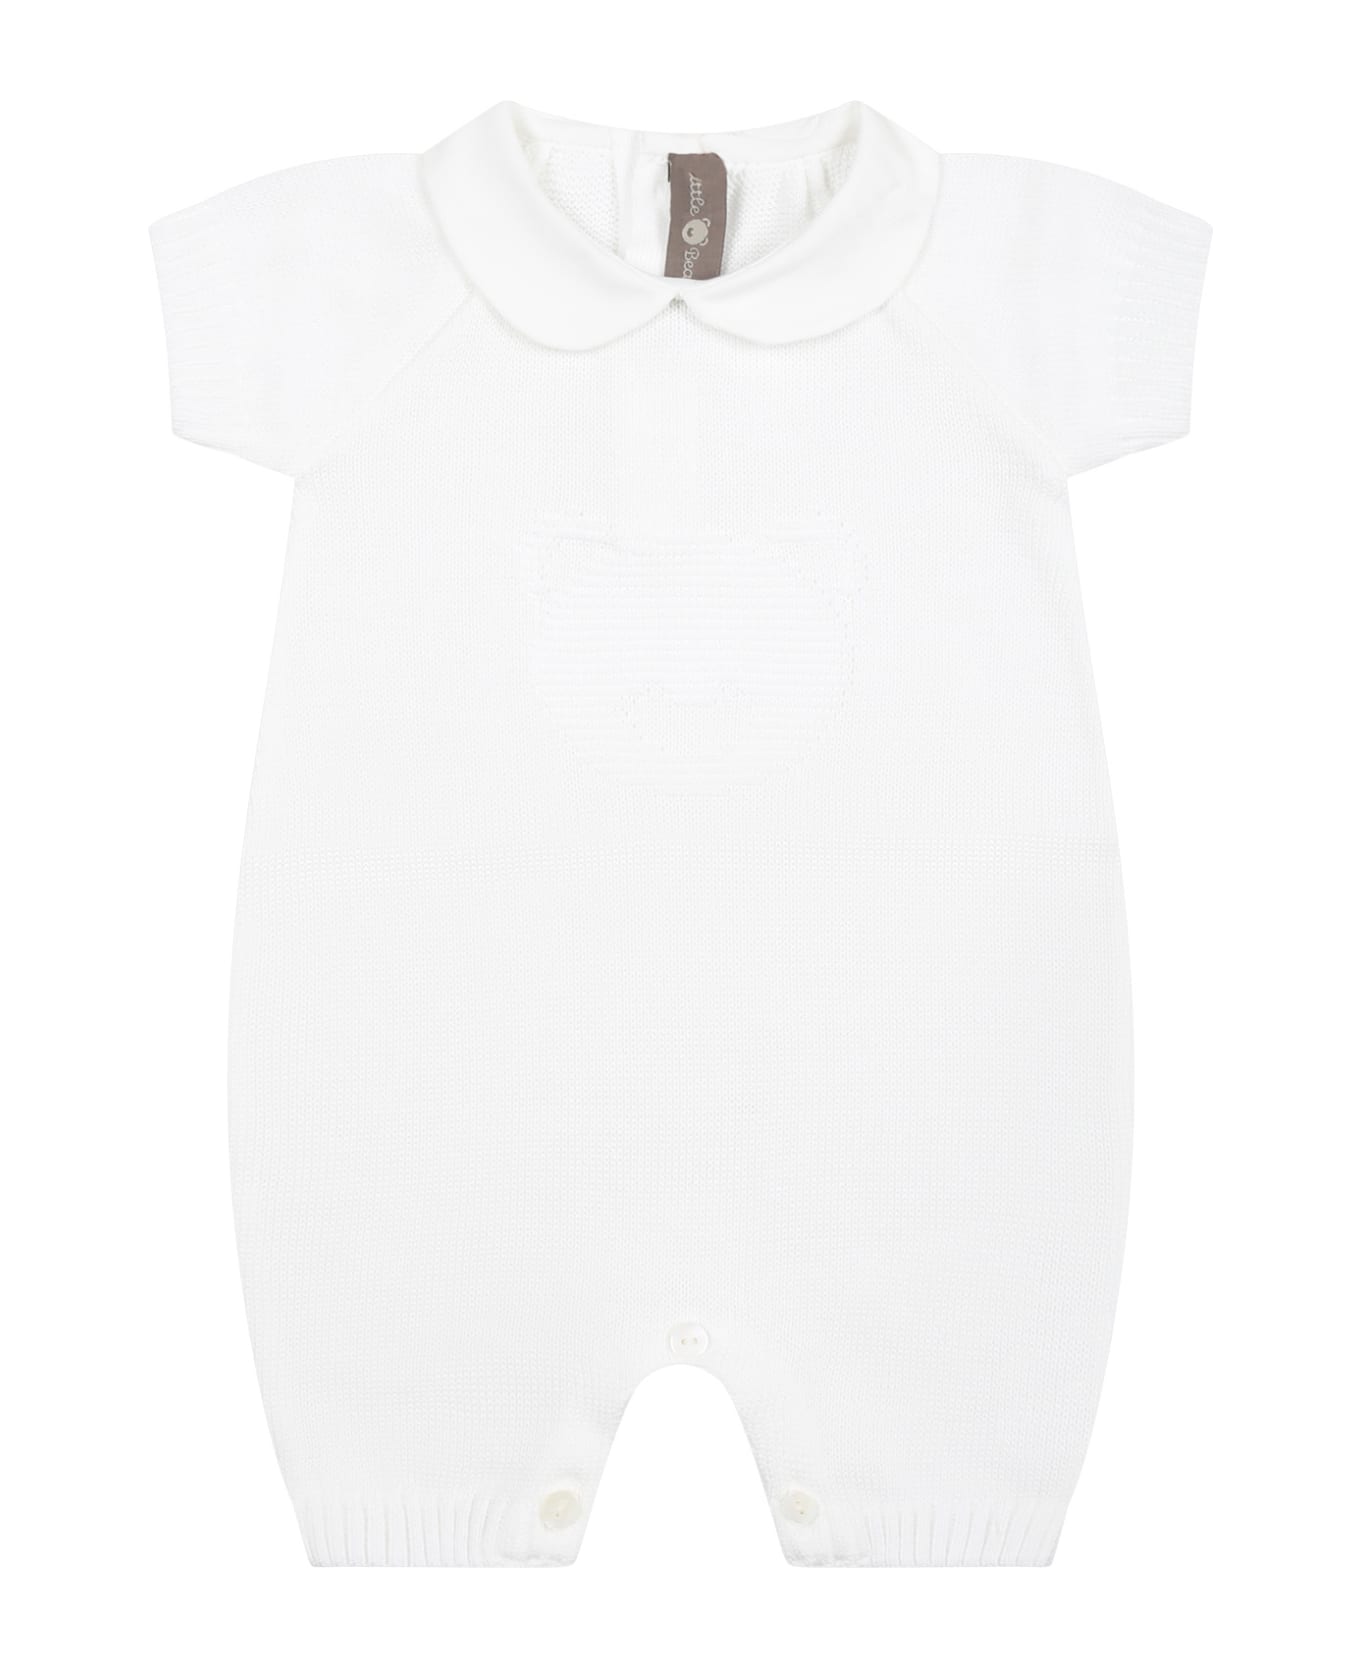 Little Bear White Romper For Baby Kids - White